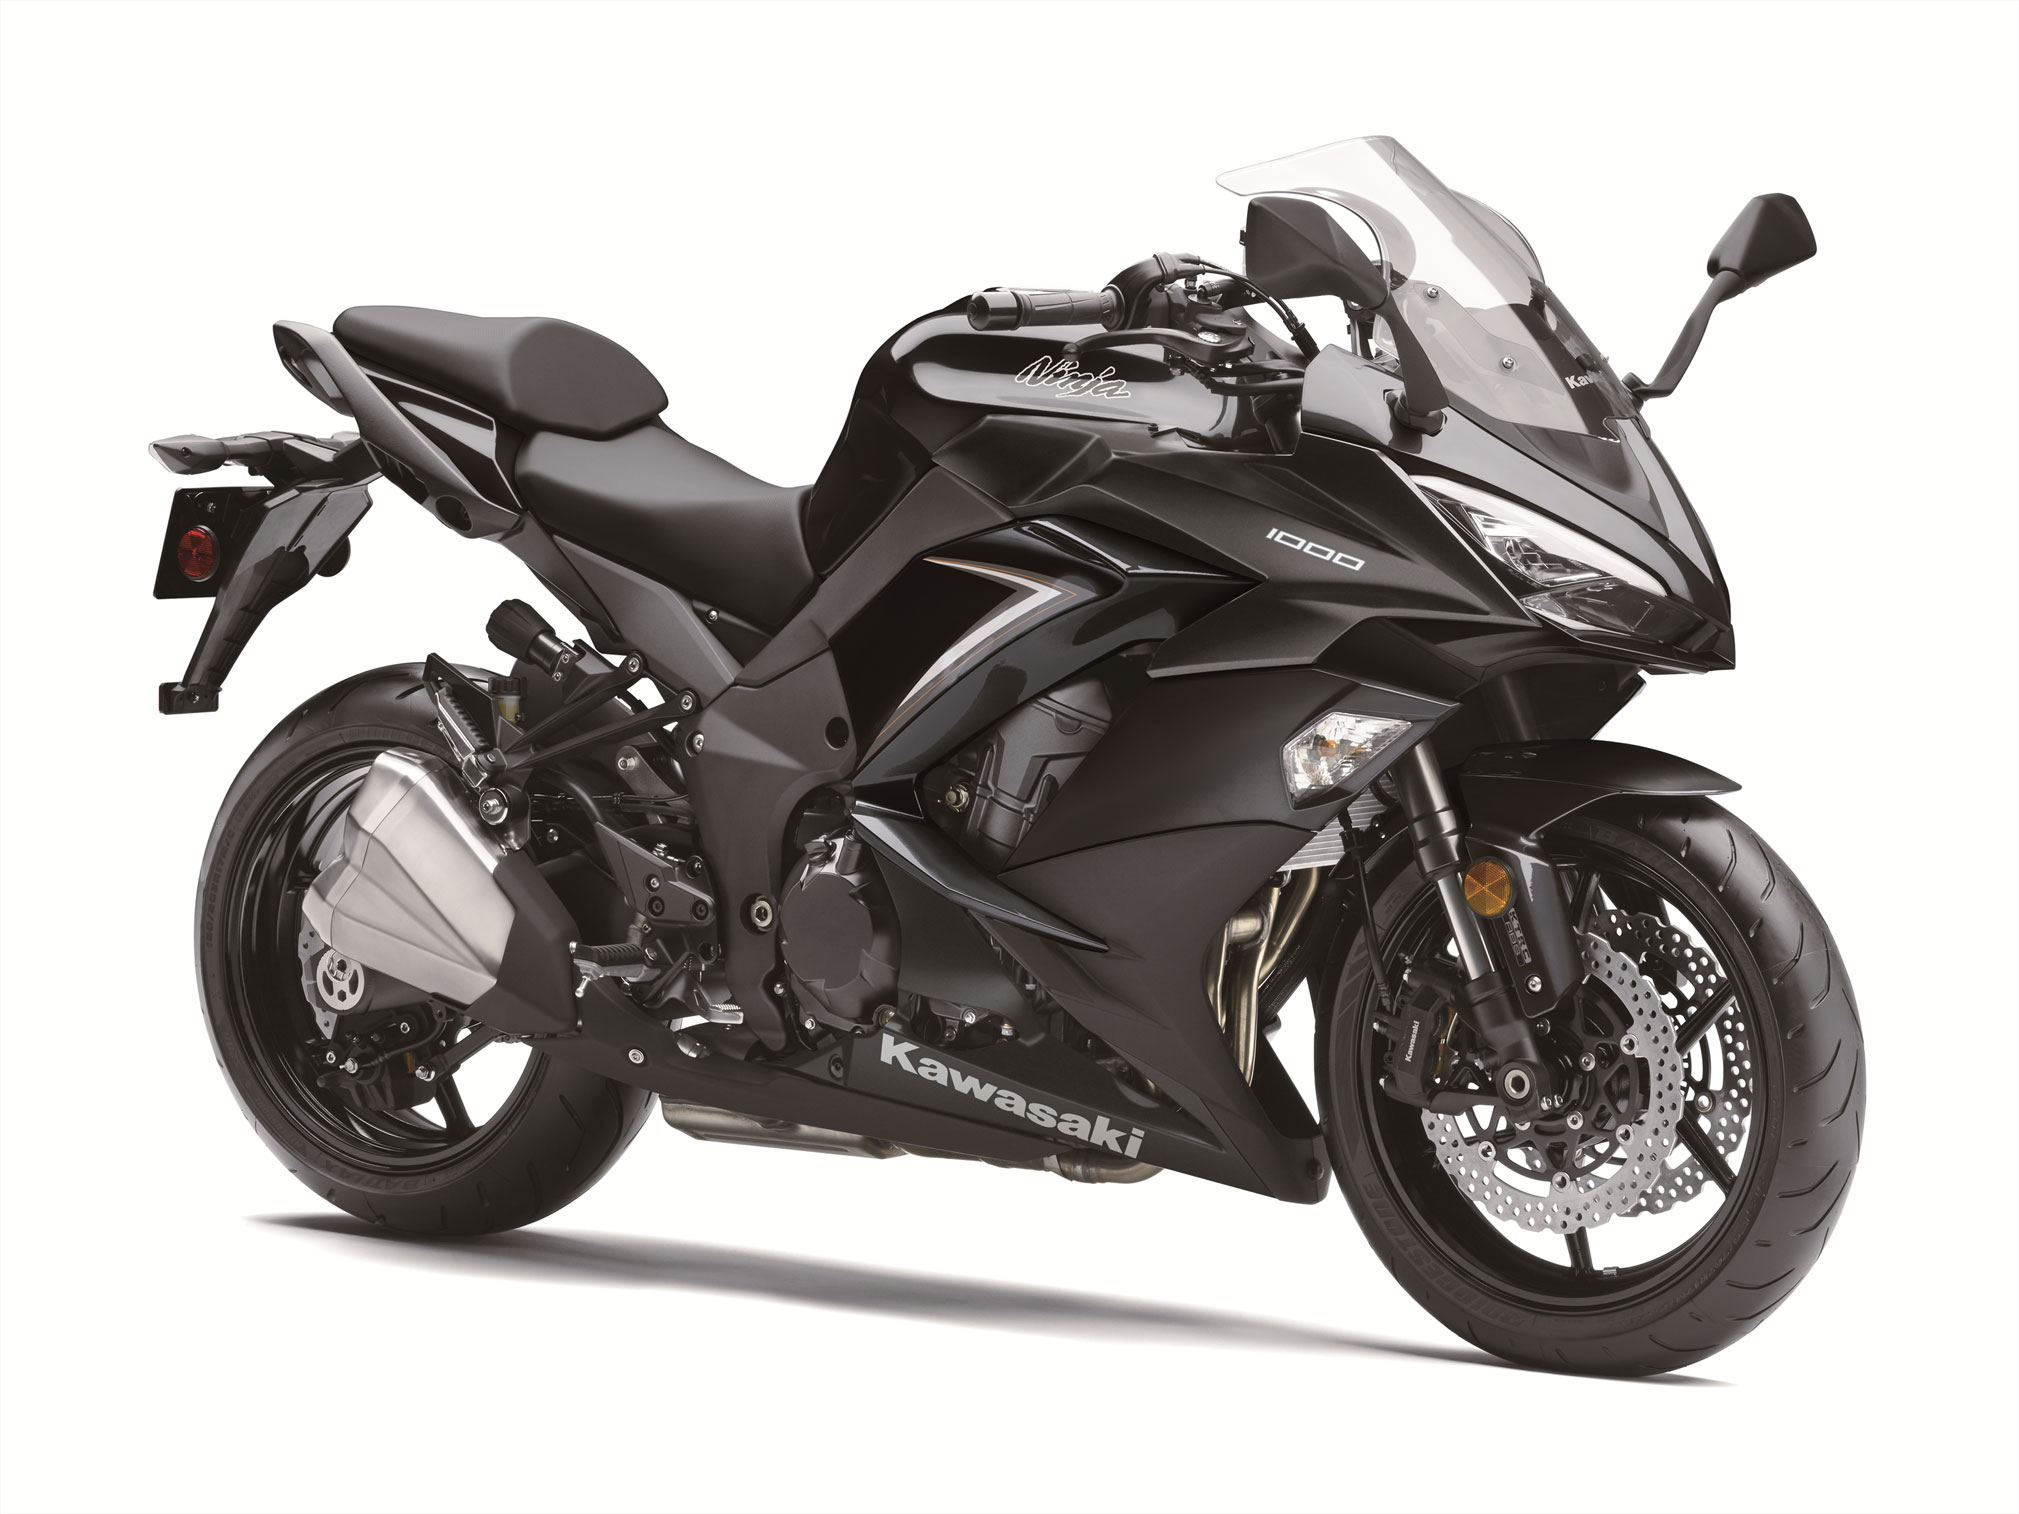 2019 Kawasaki Ninja 1000 ABS Guide • Total Motorcycle